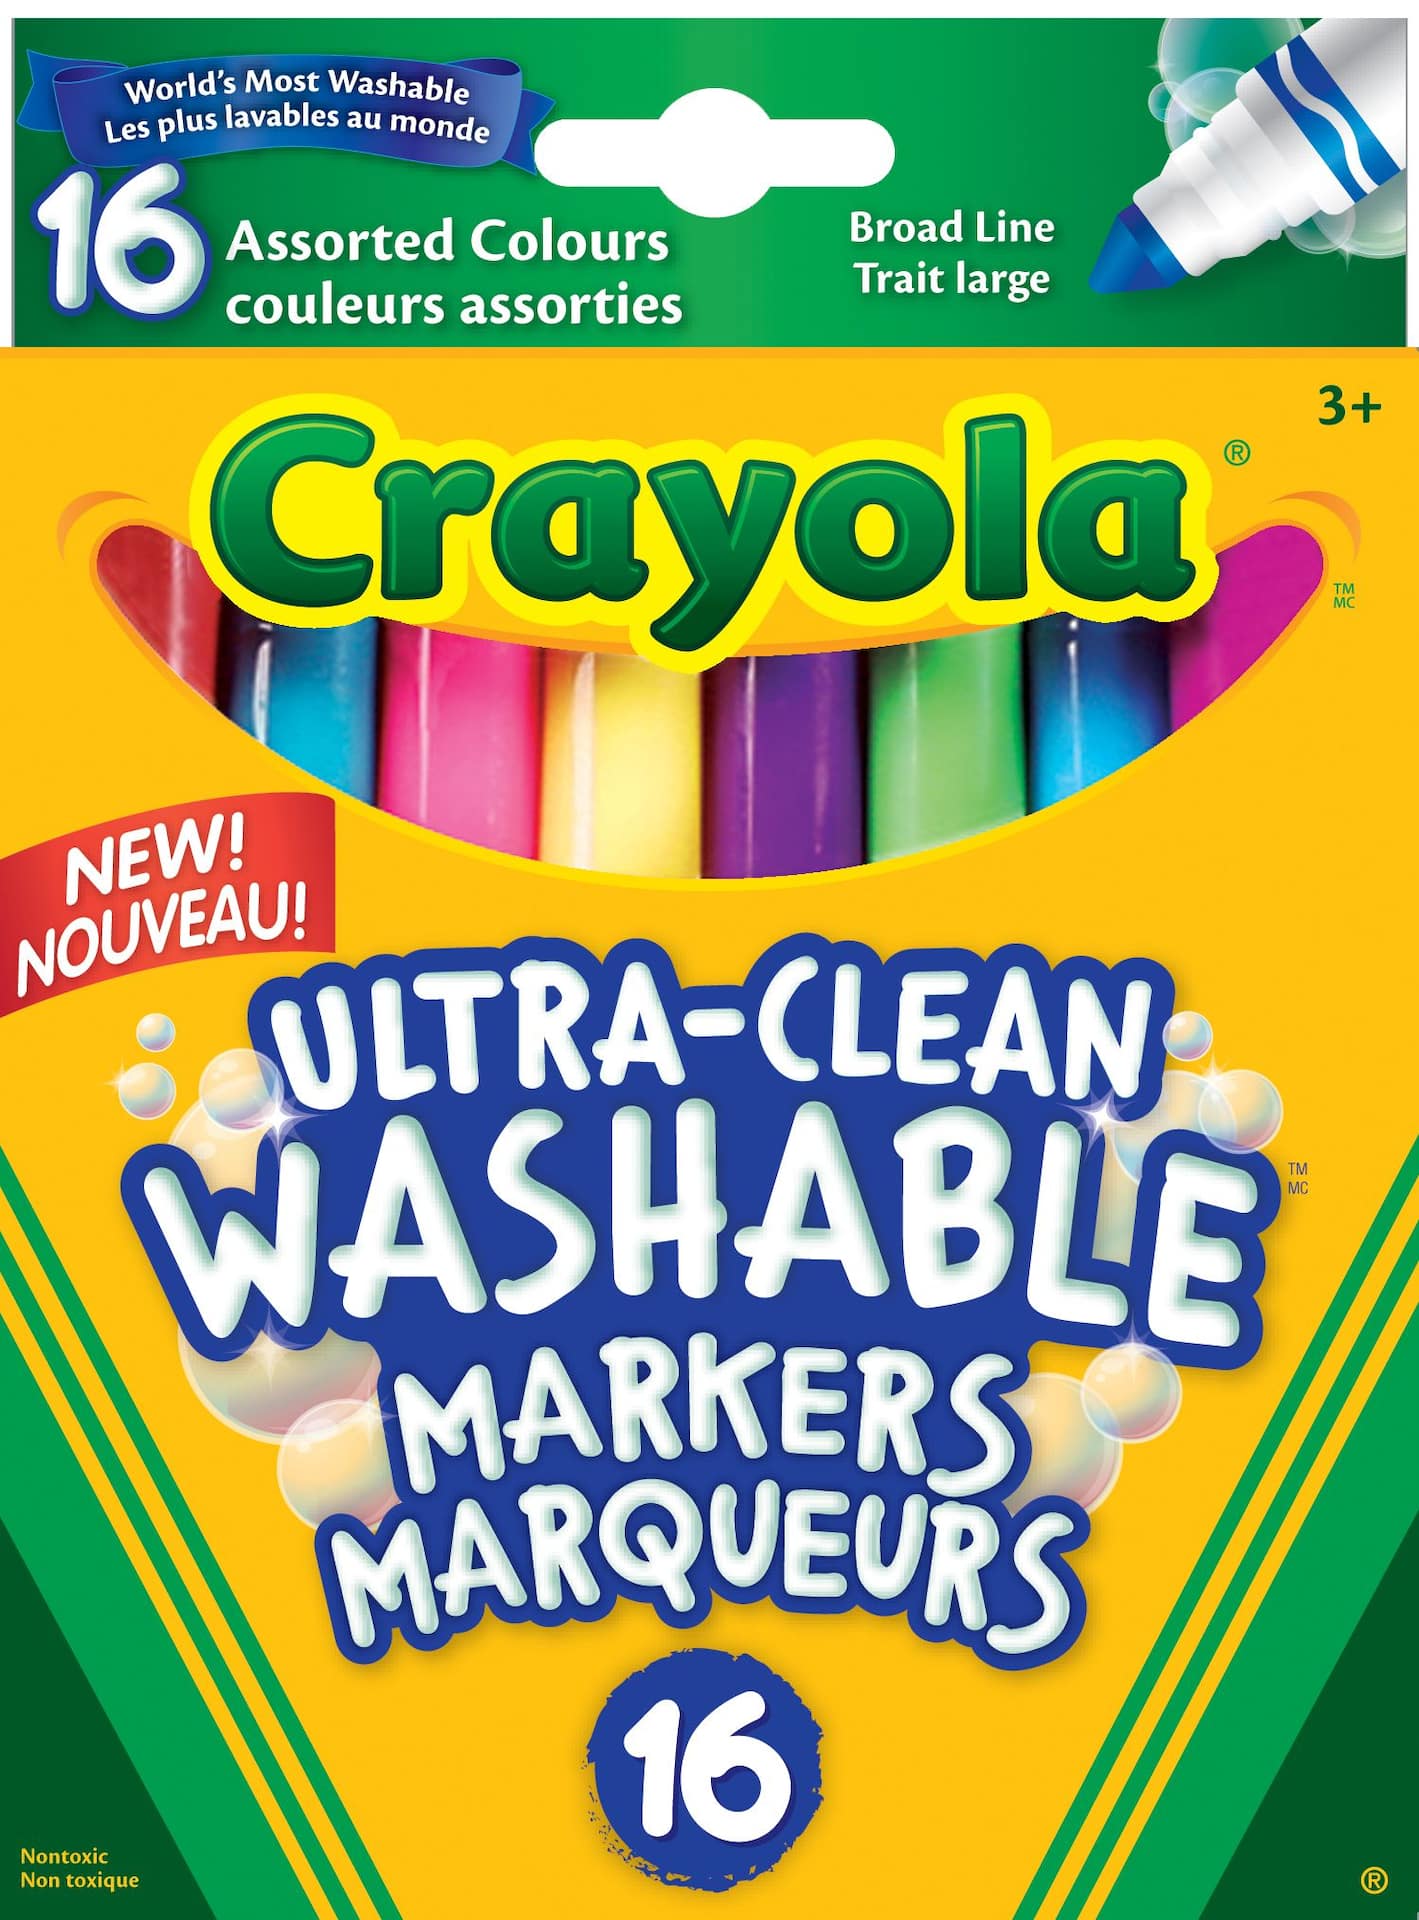 Crayola Washable Markers